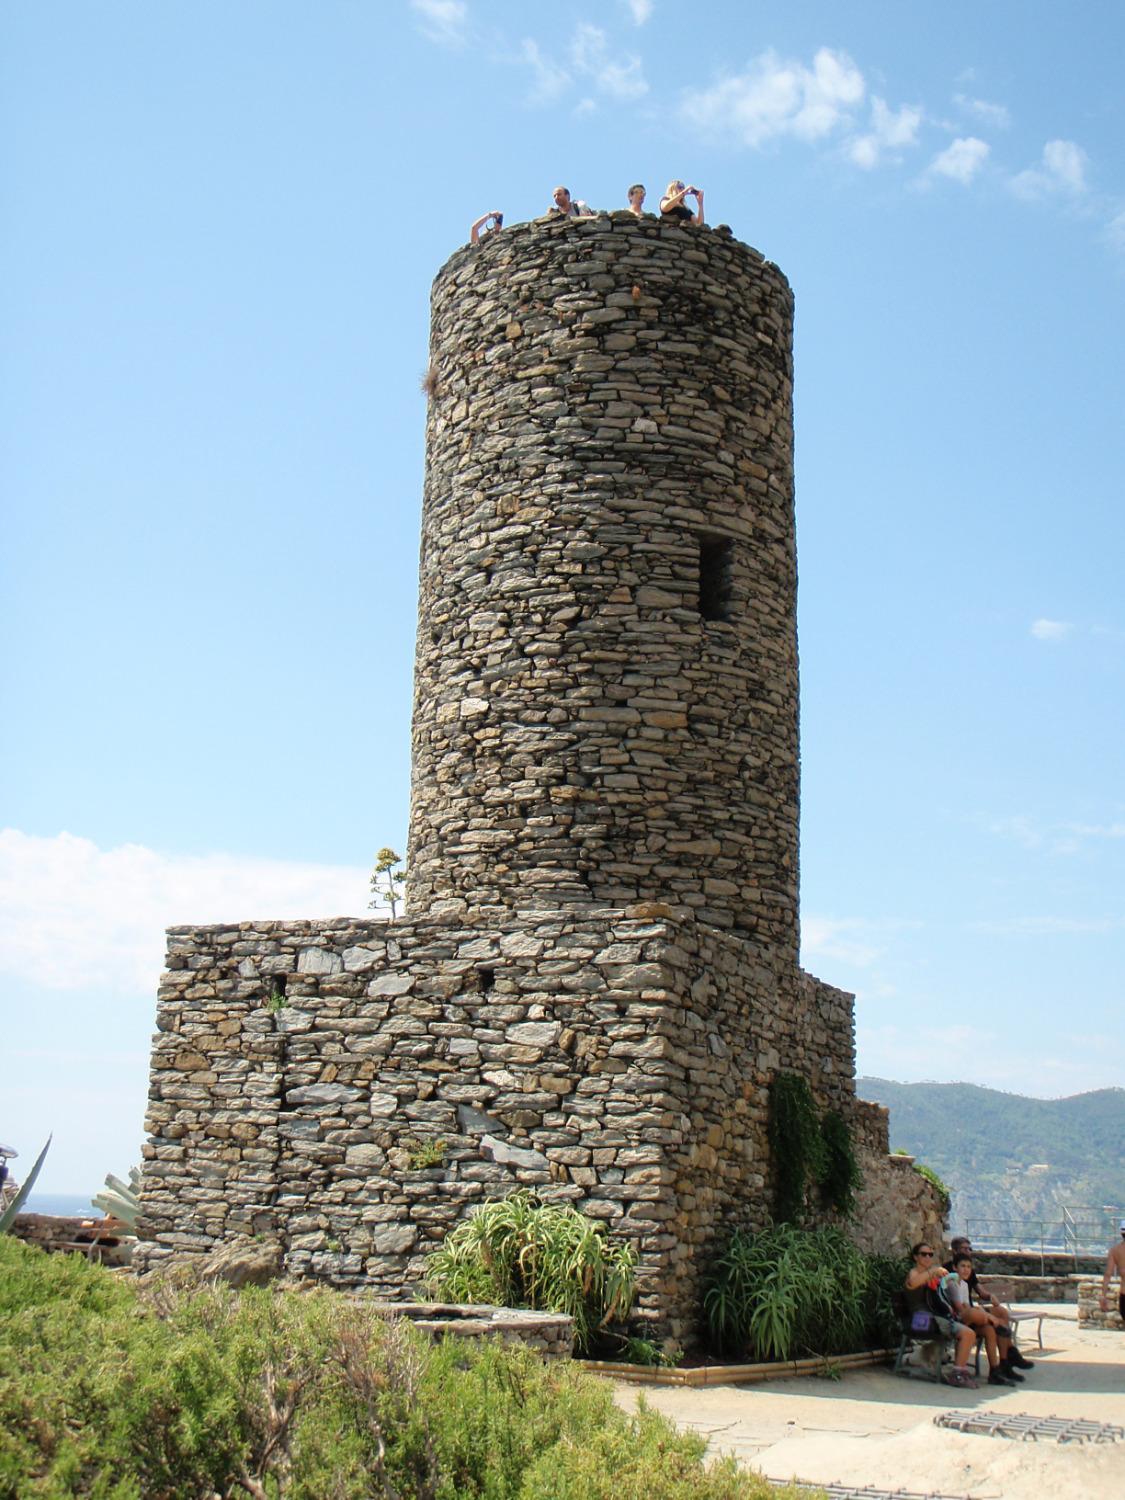 Castello Doria